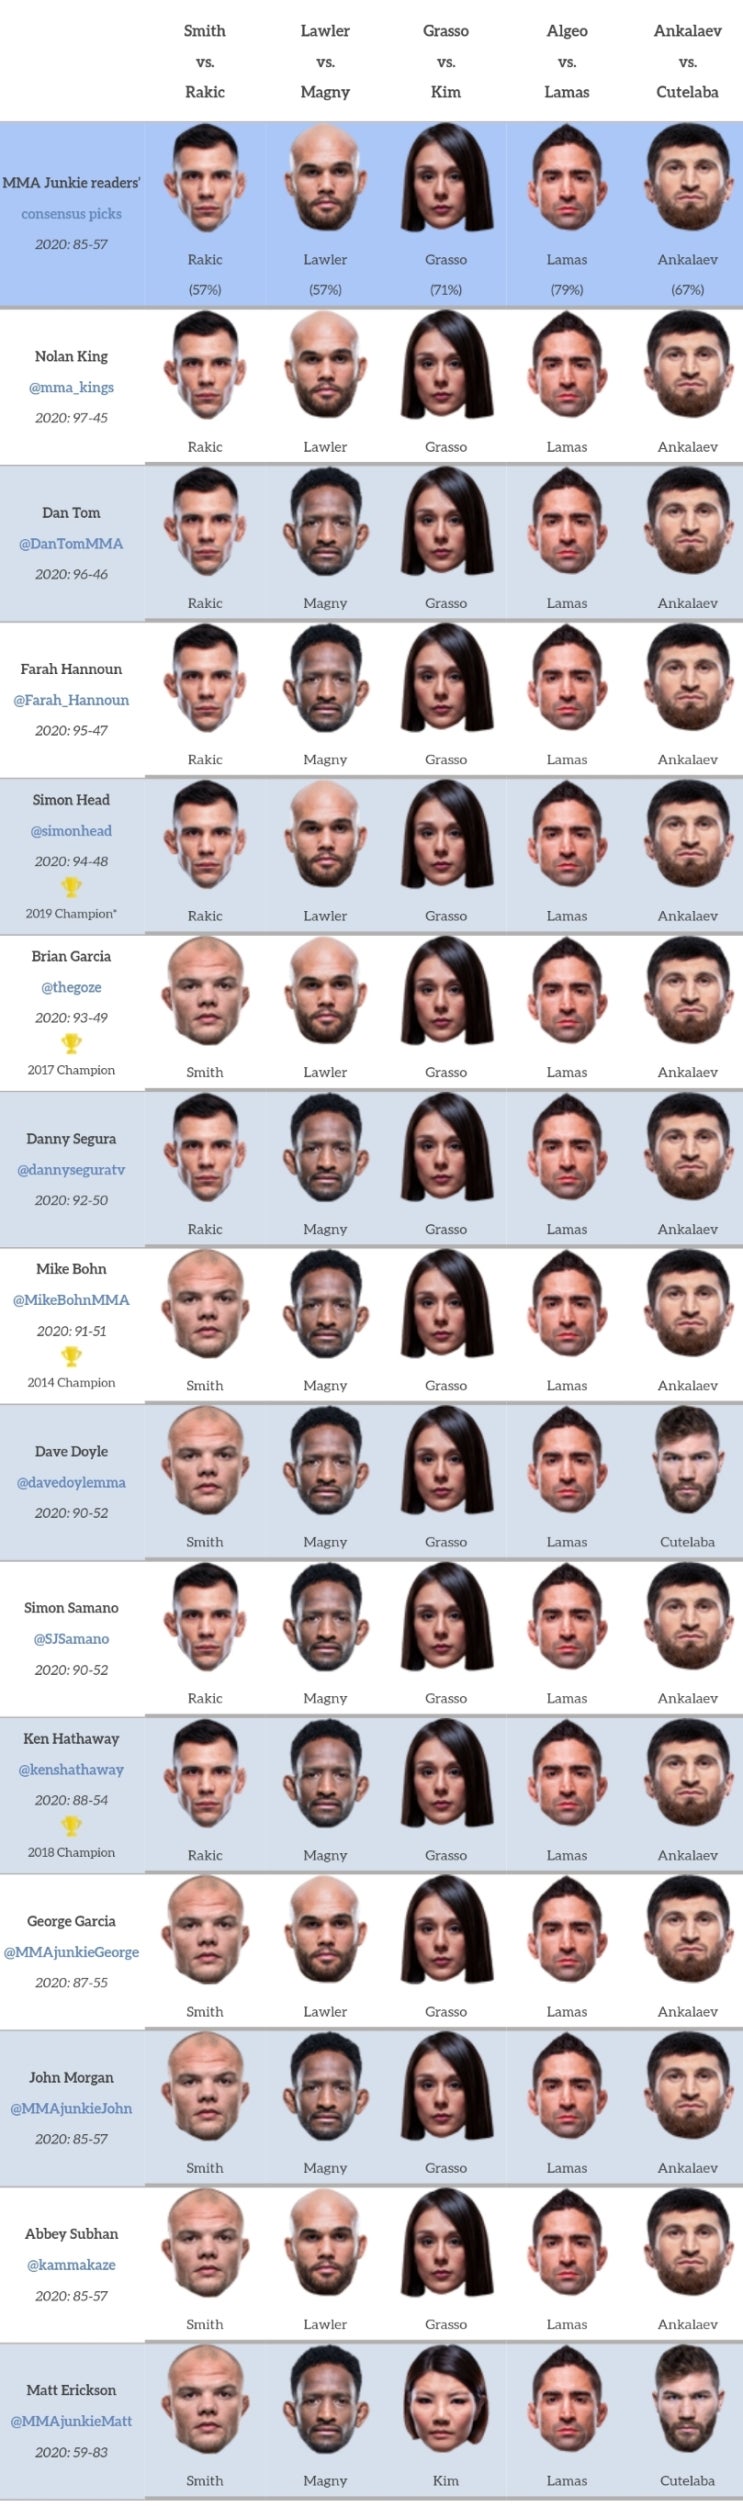 UFC 베가스 8: 스미스 vs 라키치 프리뷰(미디어 예상 및 배당률)